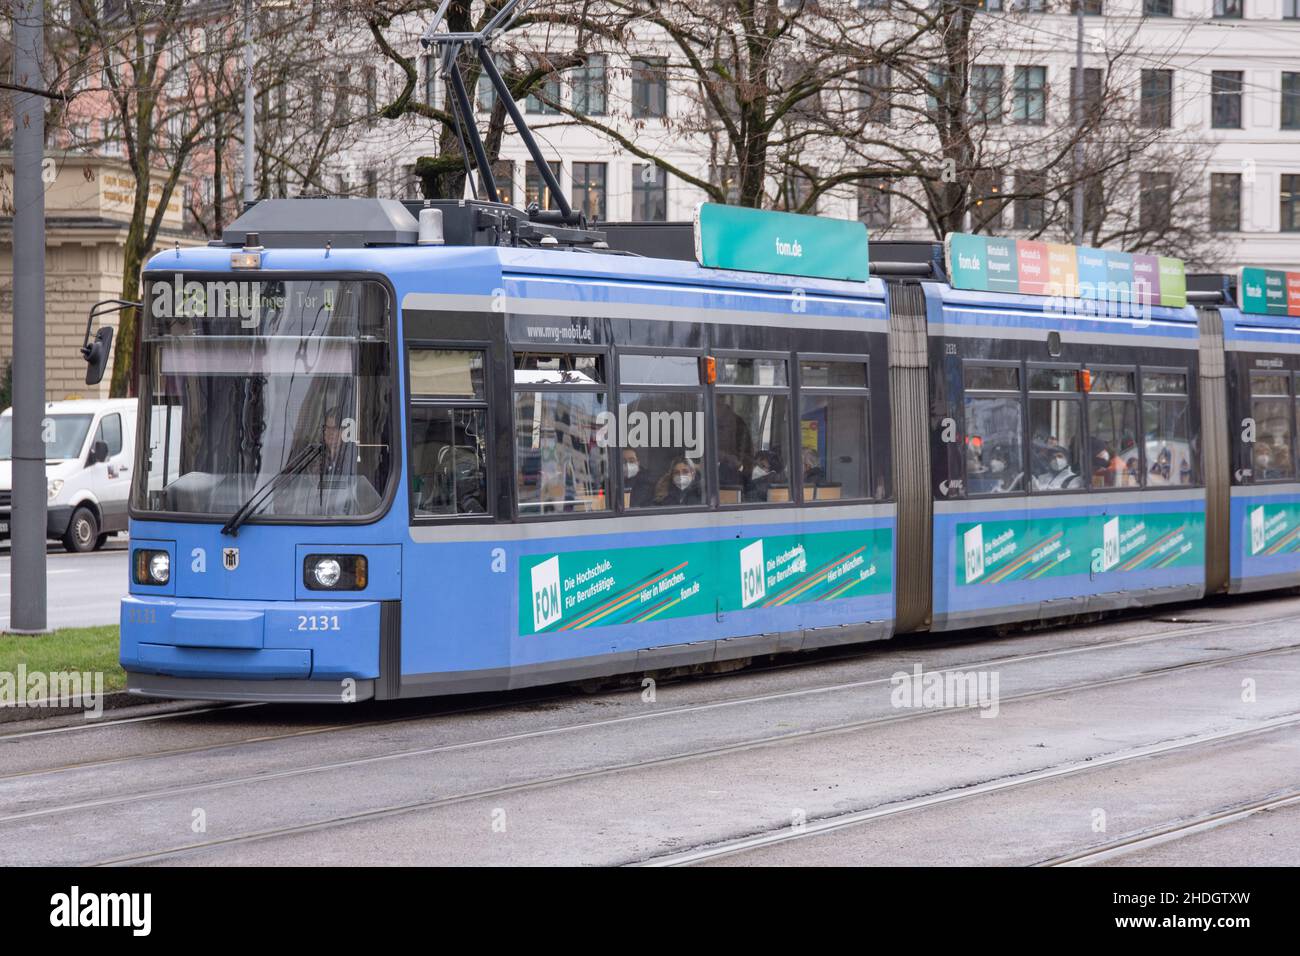 Die Straßenbahn München – officiell und im lokalen Sprachgebrauch als Tram oder Trambahn gekennzeichnet Stockfoto